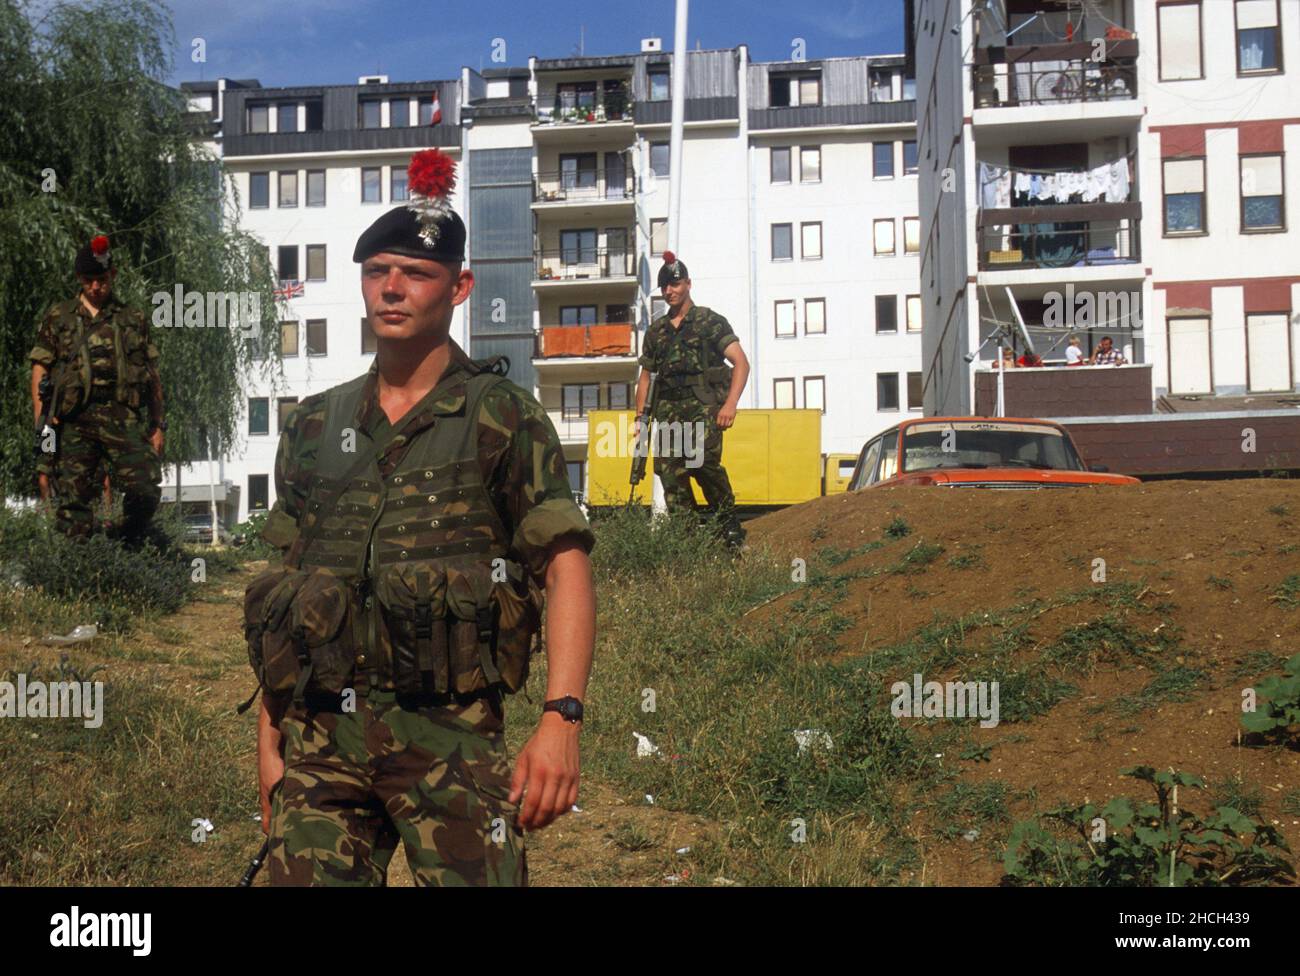 - NATO intervention  Kosovo, English soldiers in patrol to the outskirts of Pristina (July 2000)   - Intervento NATO Kossovo, militari inglesi in pattuglia alla periferia di Pristina (Luglio 2000) Stock Photo